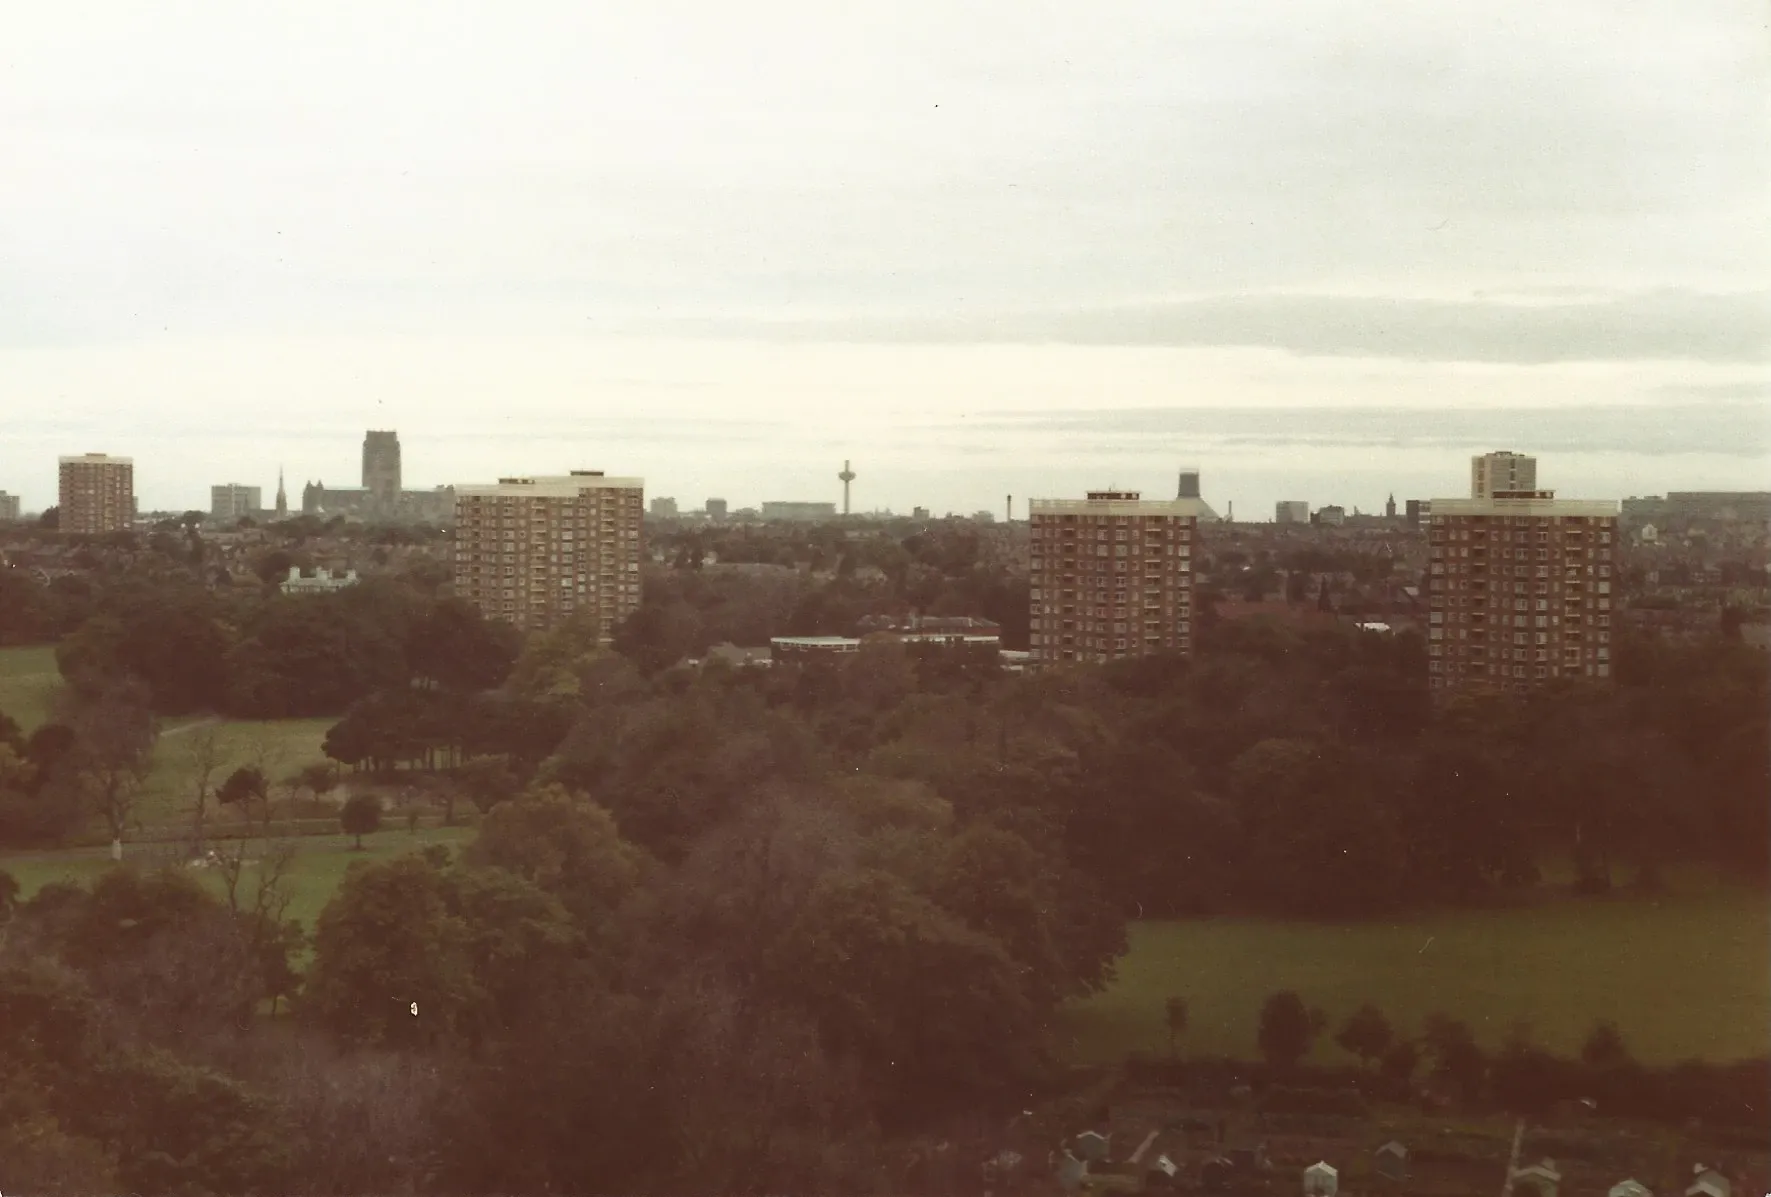 Liverpool skyline taken from Merebank block in 1985